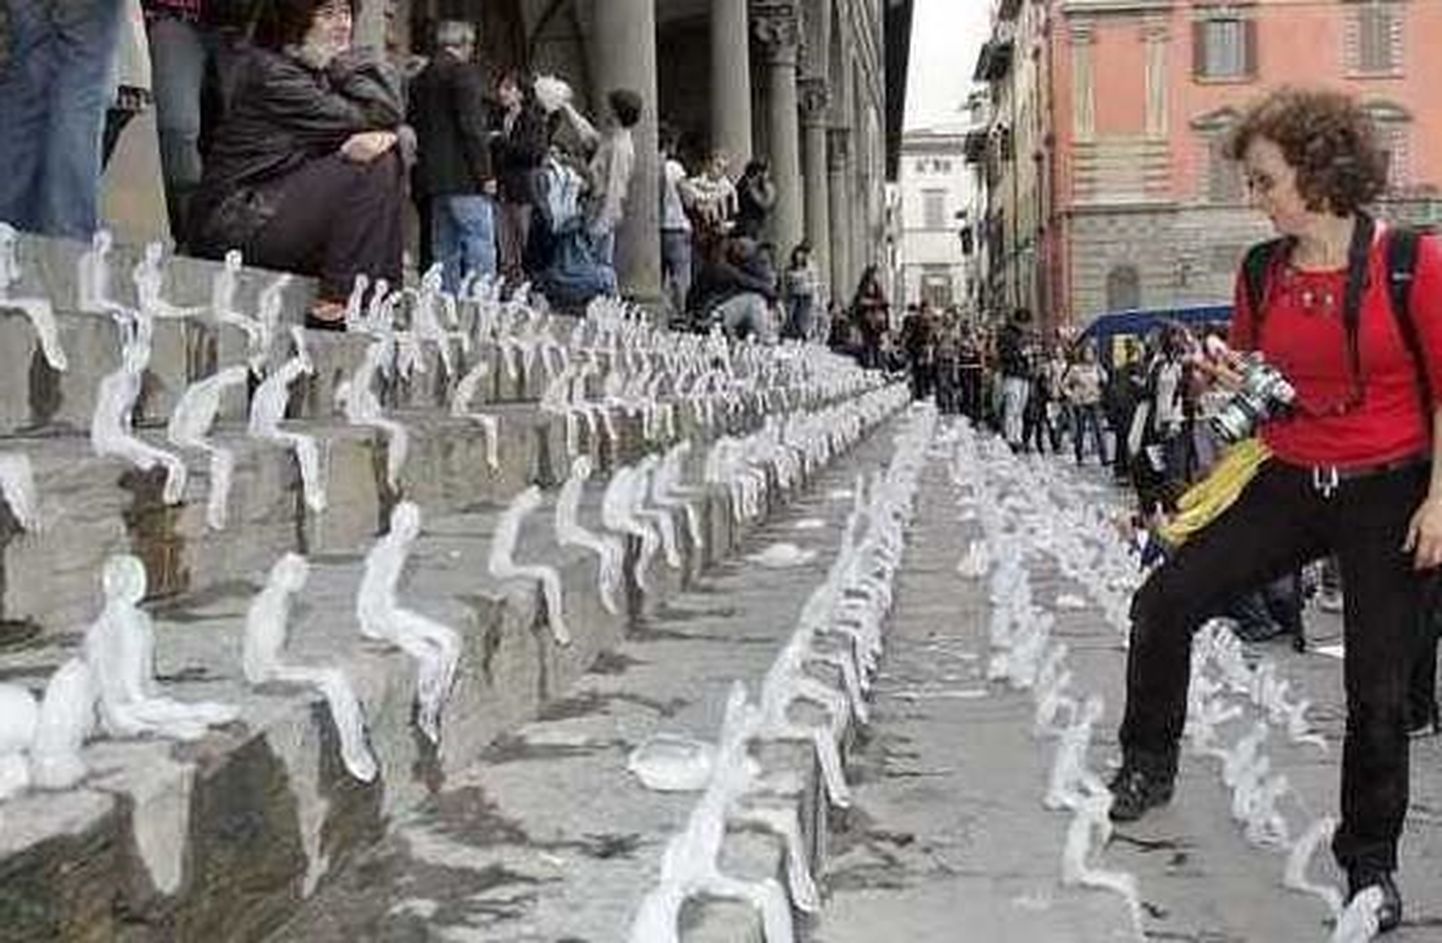 Jääfiguurid Itaalias Firenzes